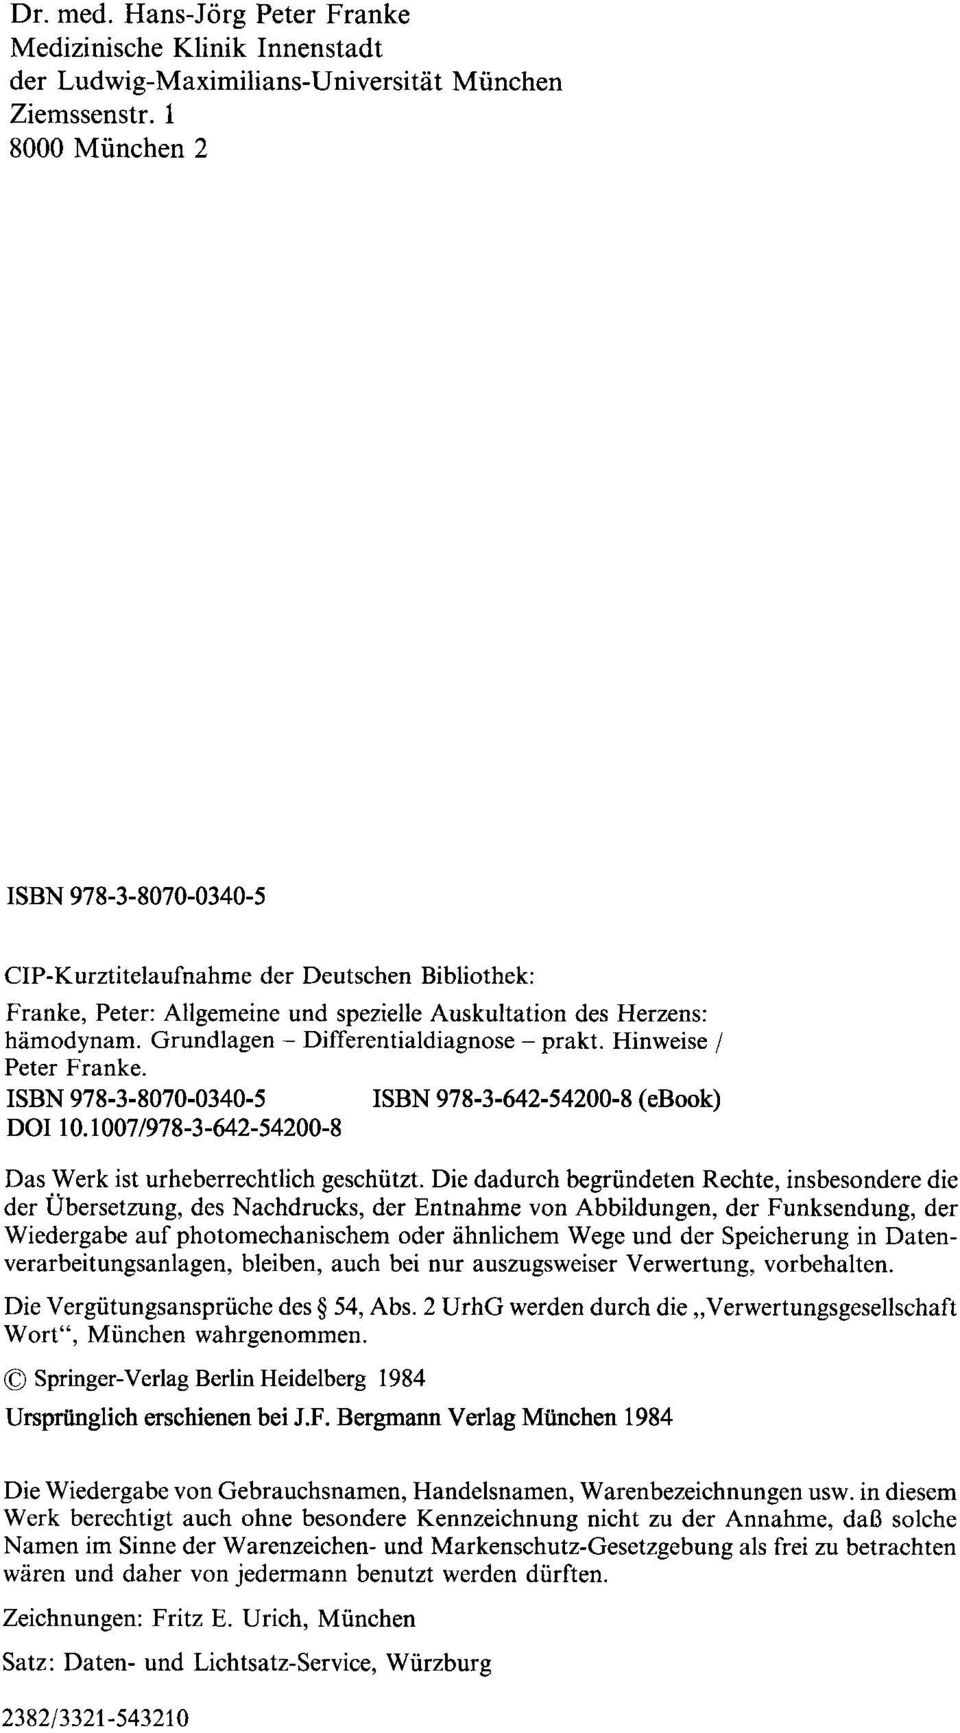 Grundlagen - Differentialdiagnose - prakt. Hinweise / Peter Franke. ISBN 978-3-8070-0340-5 ISBN 978-3-642-54200-8 (ebook) DOI 10.1007/978-3-642-54200-8 Das Werk ist urheberrechtlich geschiitzt.